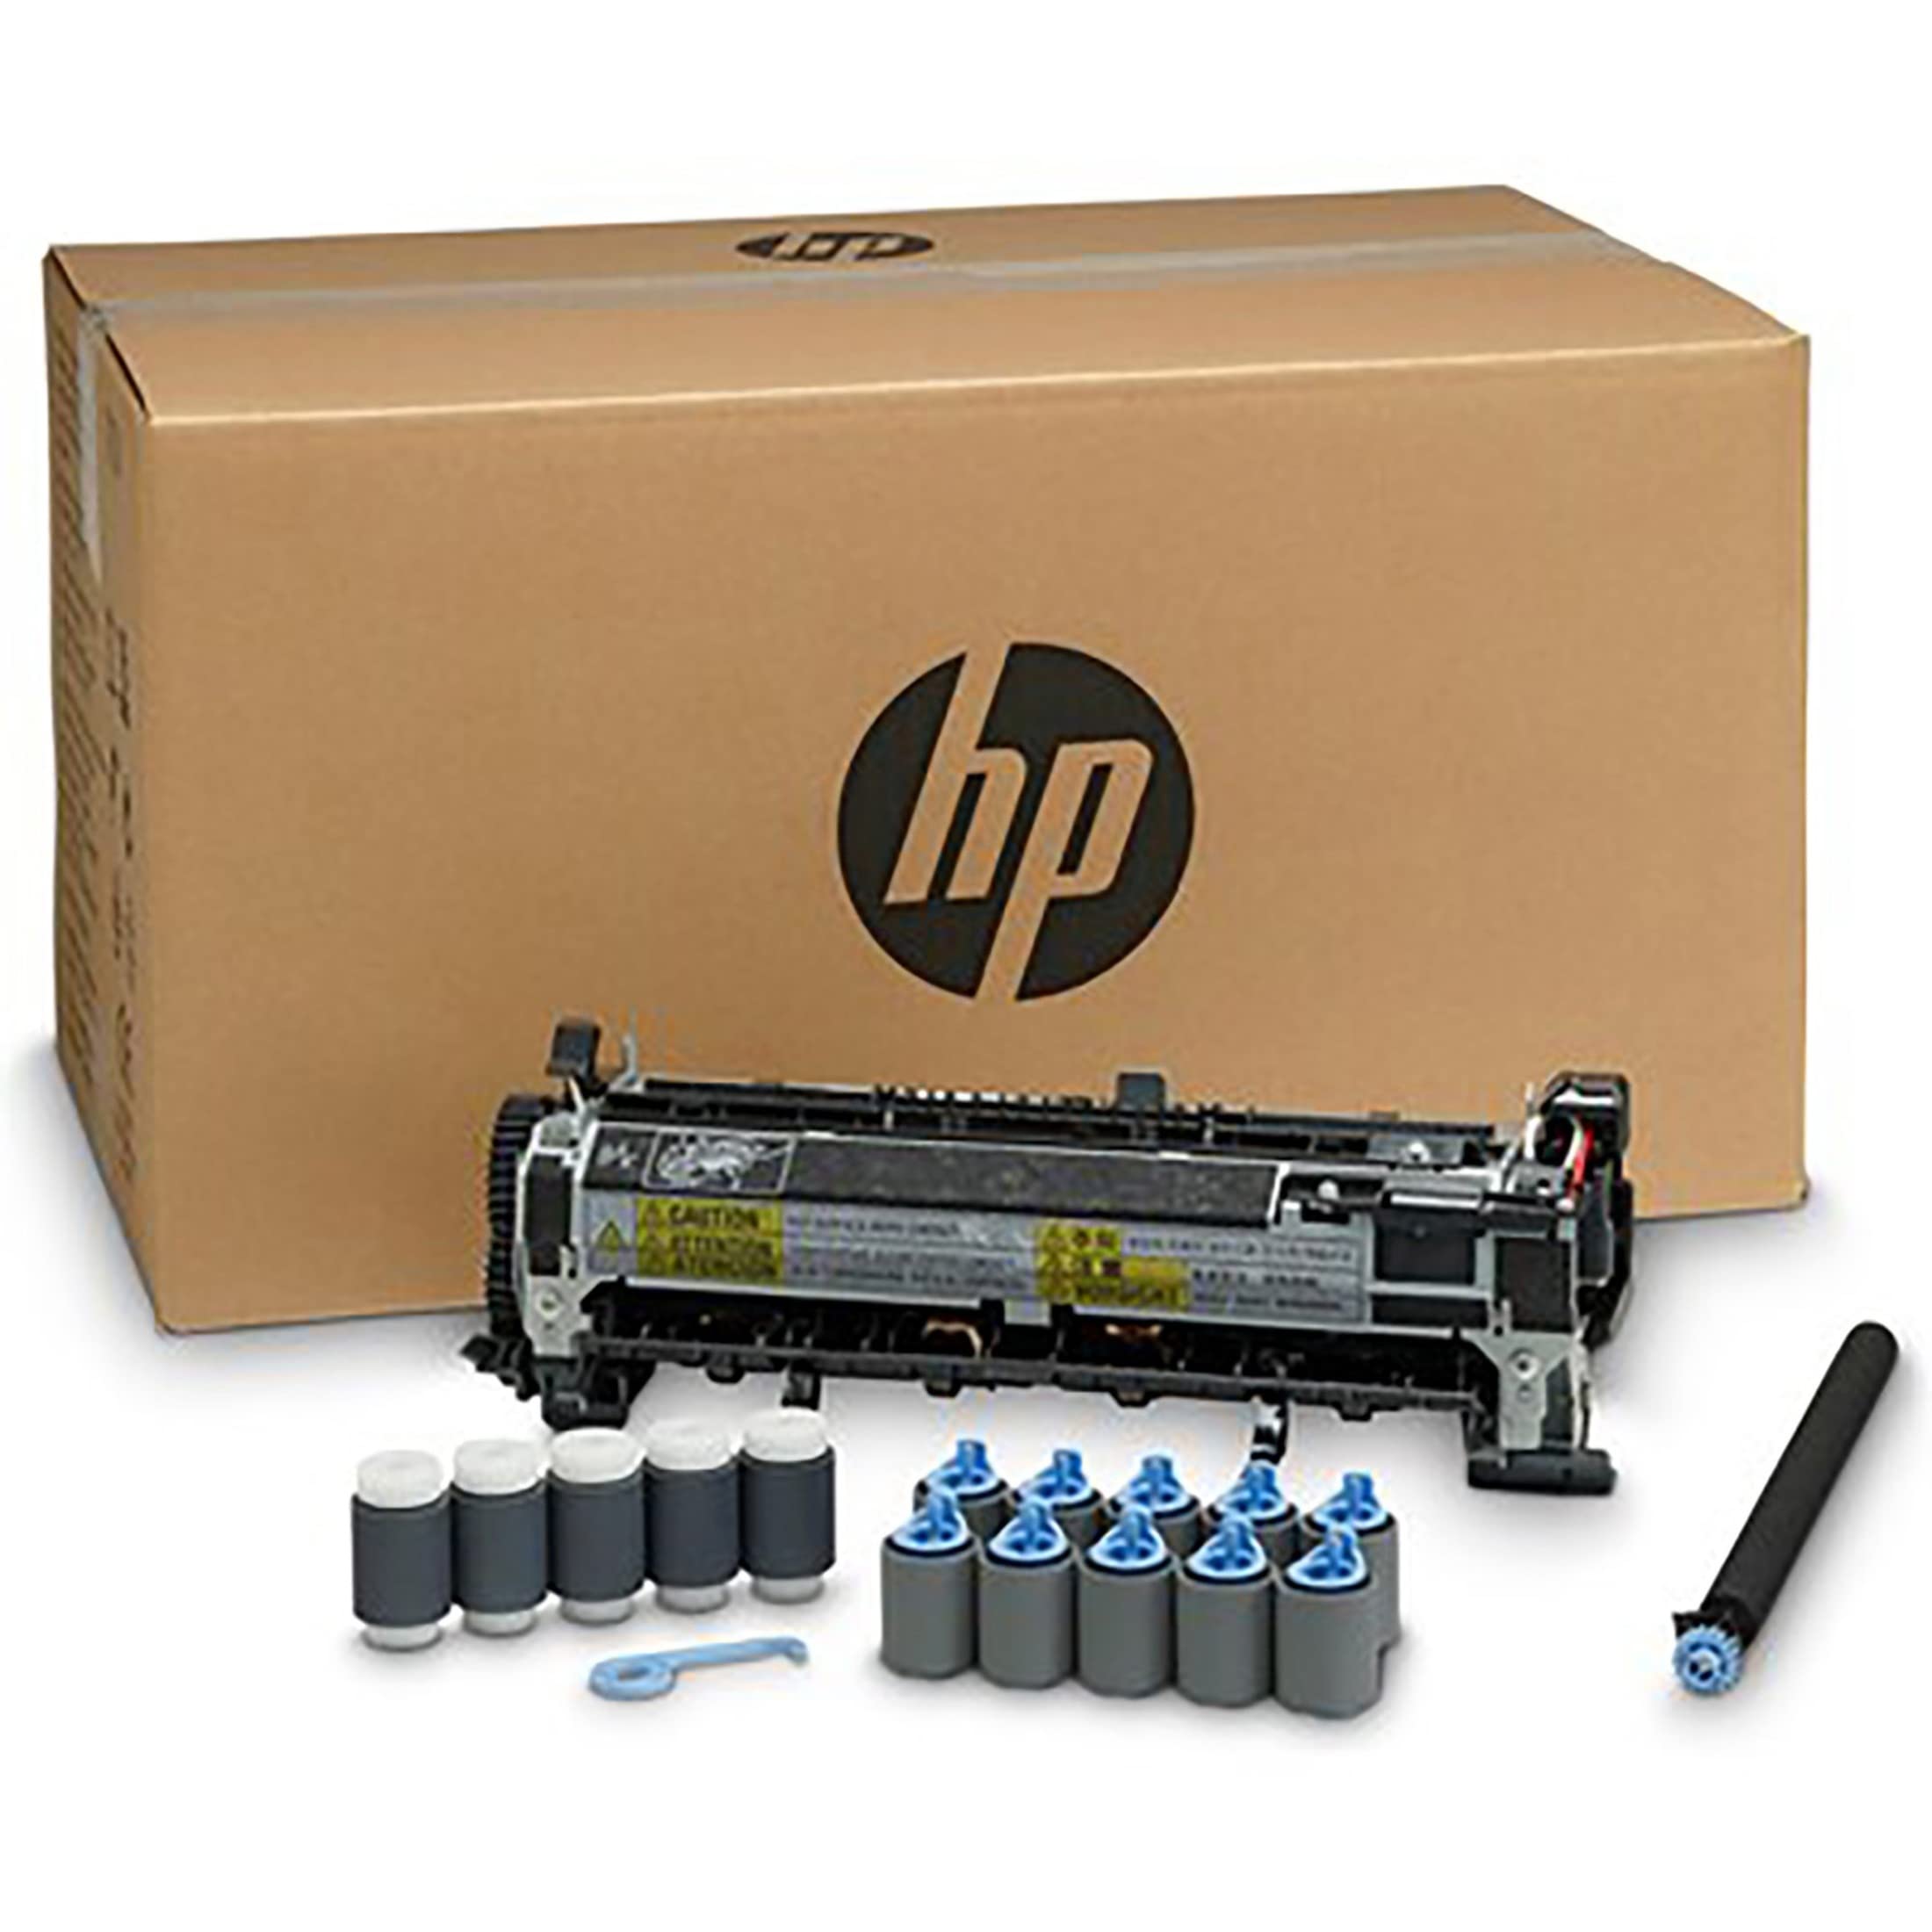 HP ，HEWF2G76A，Laserjet 110V 维护套件，F2G76A，各 1 个...